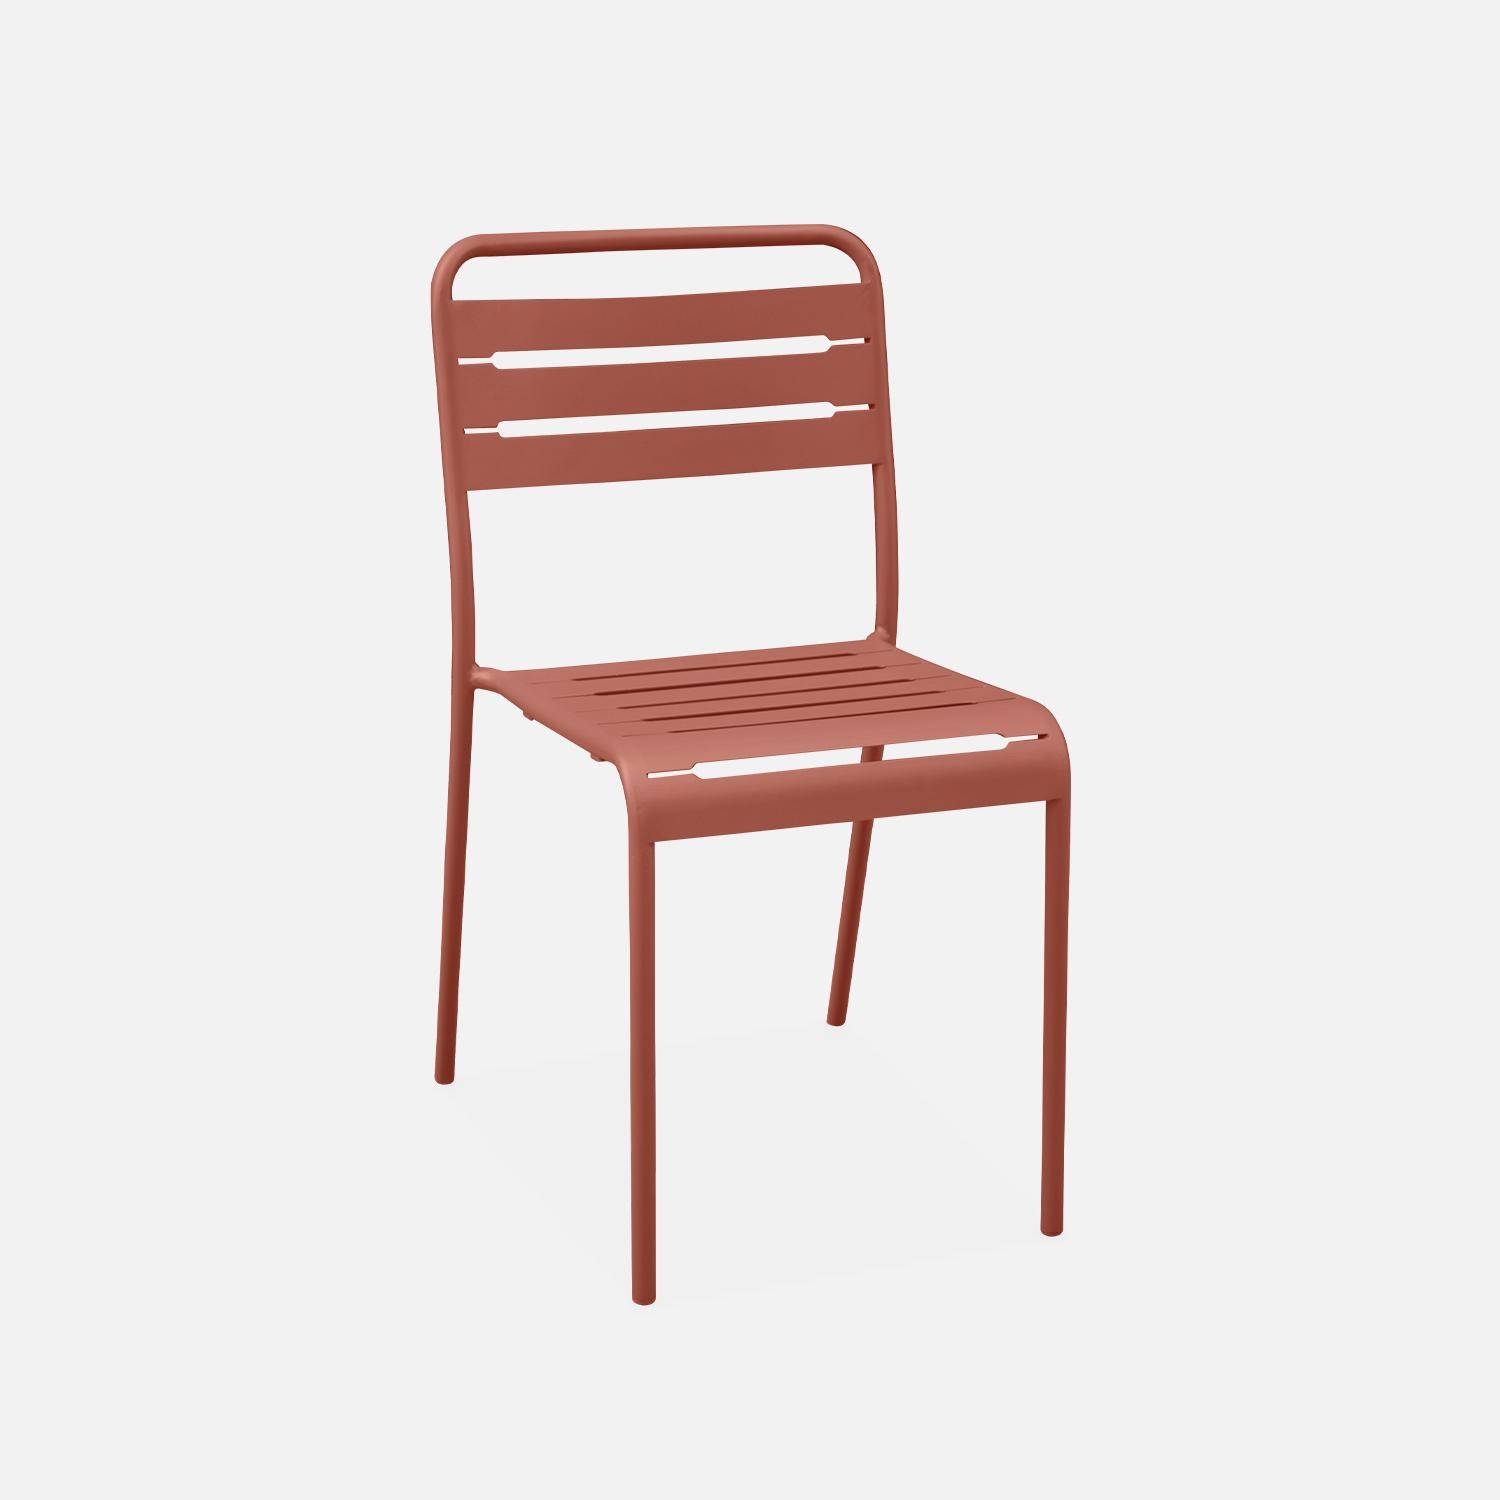 Table de jardin métal + 2 fauteuils et 4 chaises, terracotta, acier traitement anti rouille Photo3